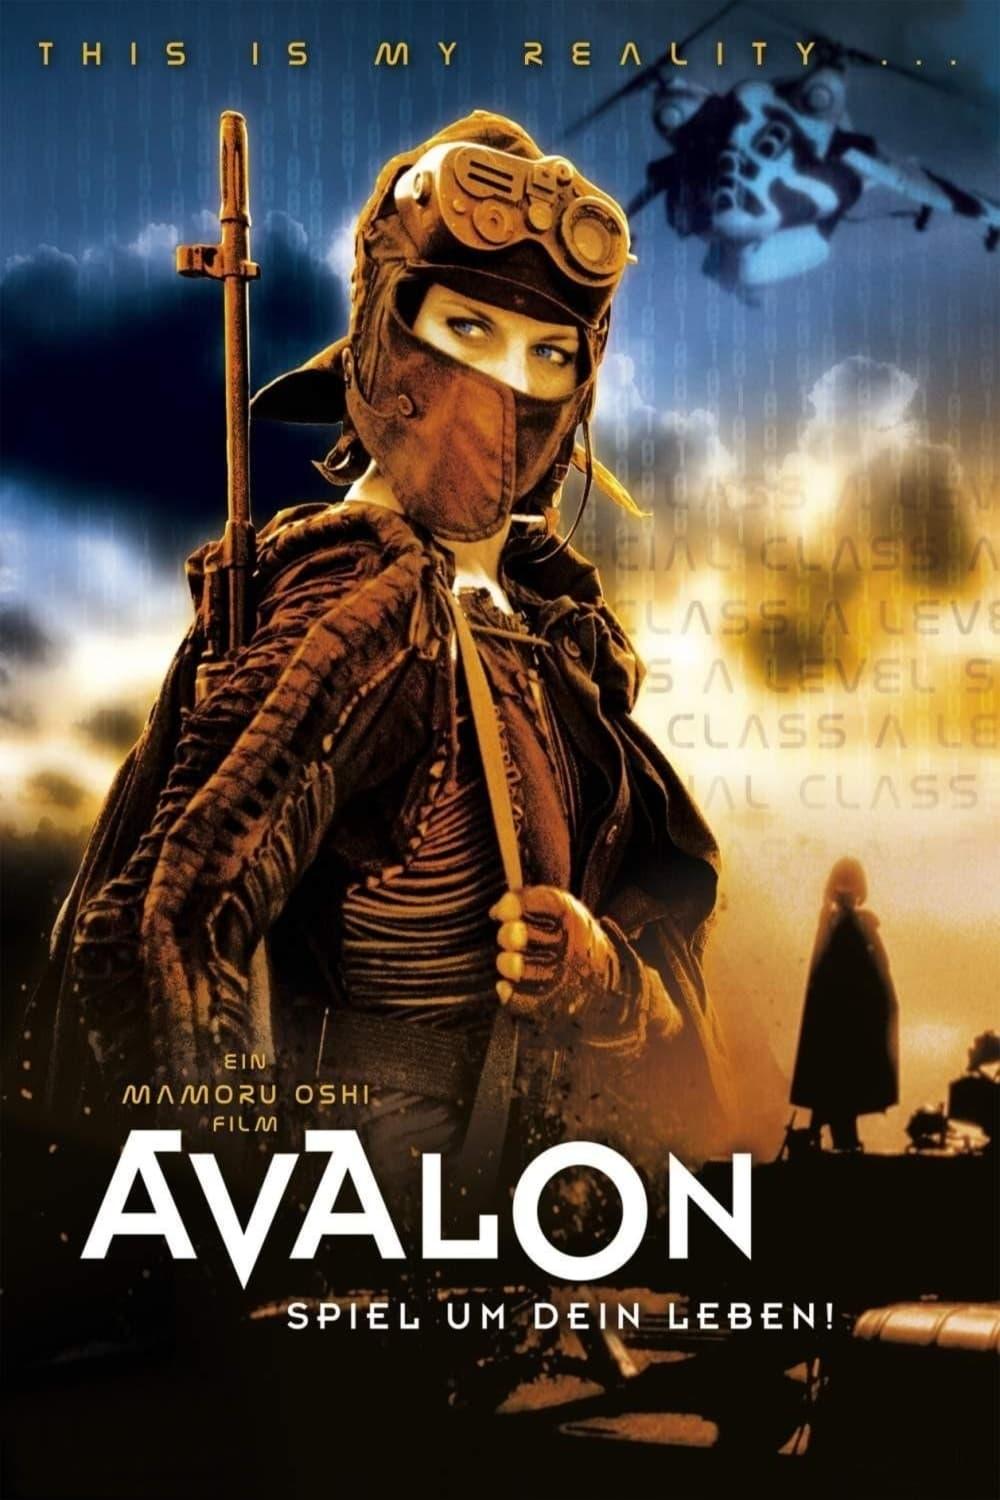 Avalon - Spiel um dein Leben poster